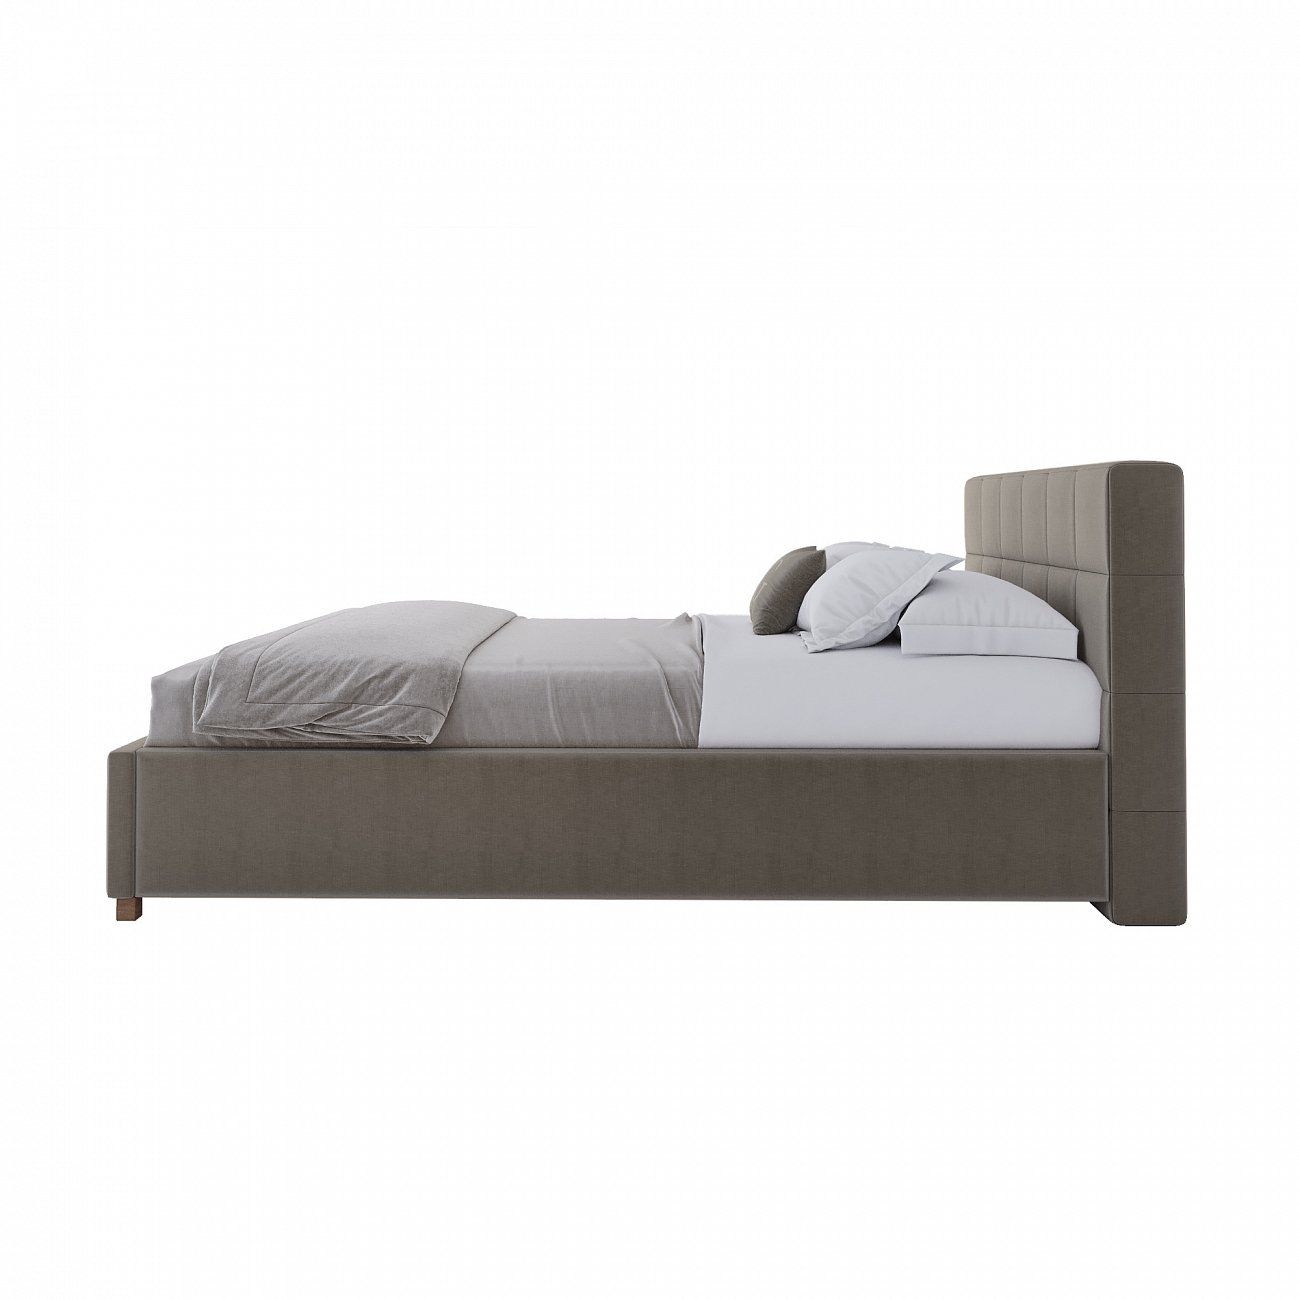 Teenage bed 140x200 cm grey-brown Wales